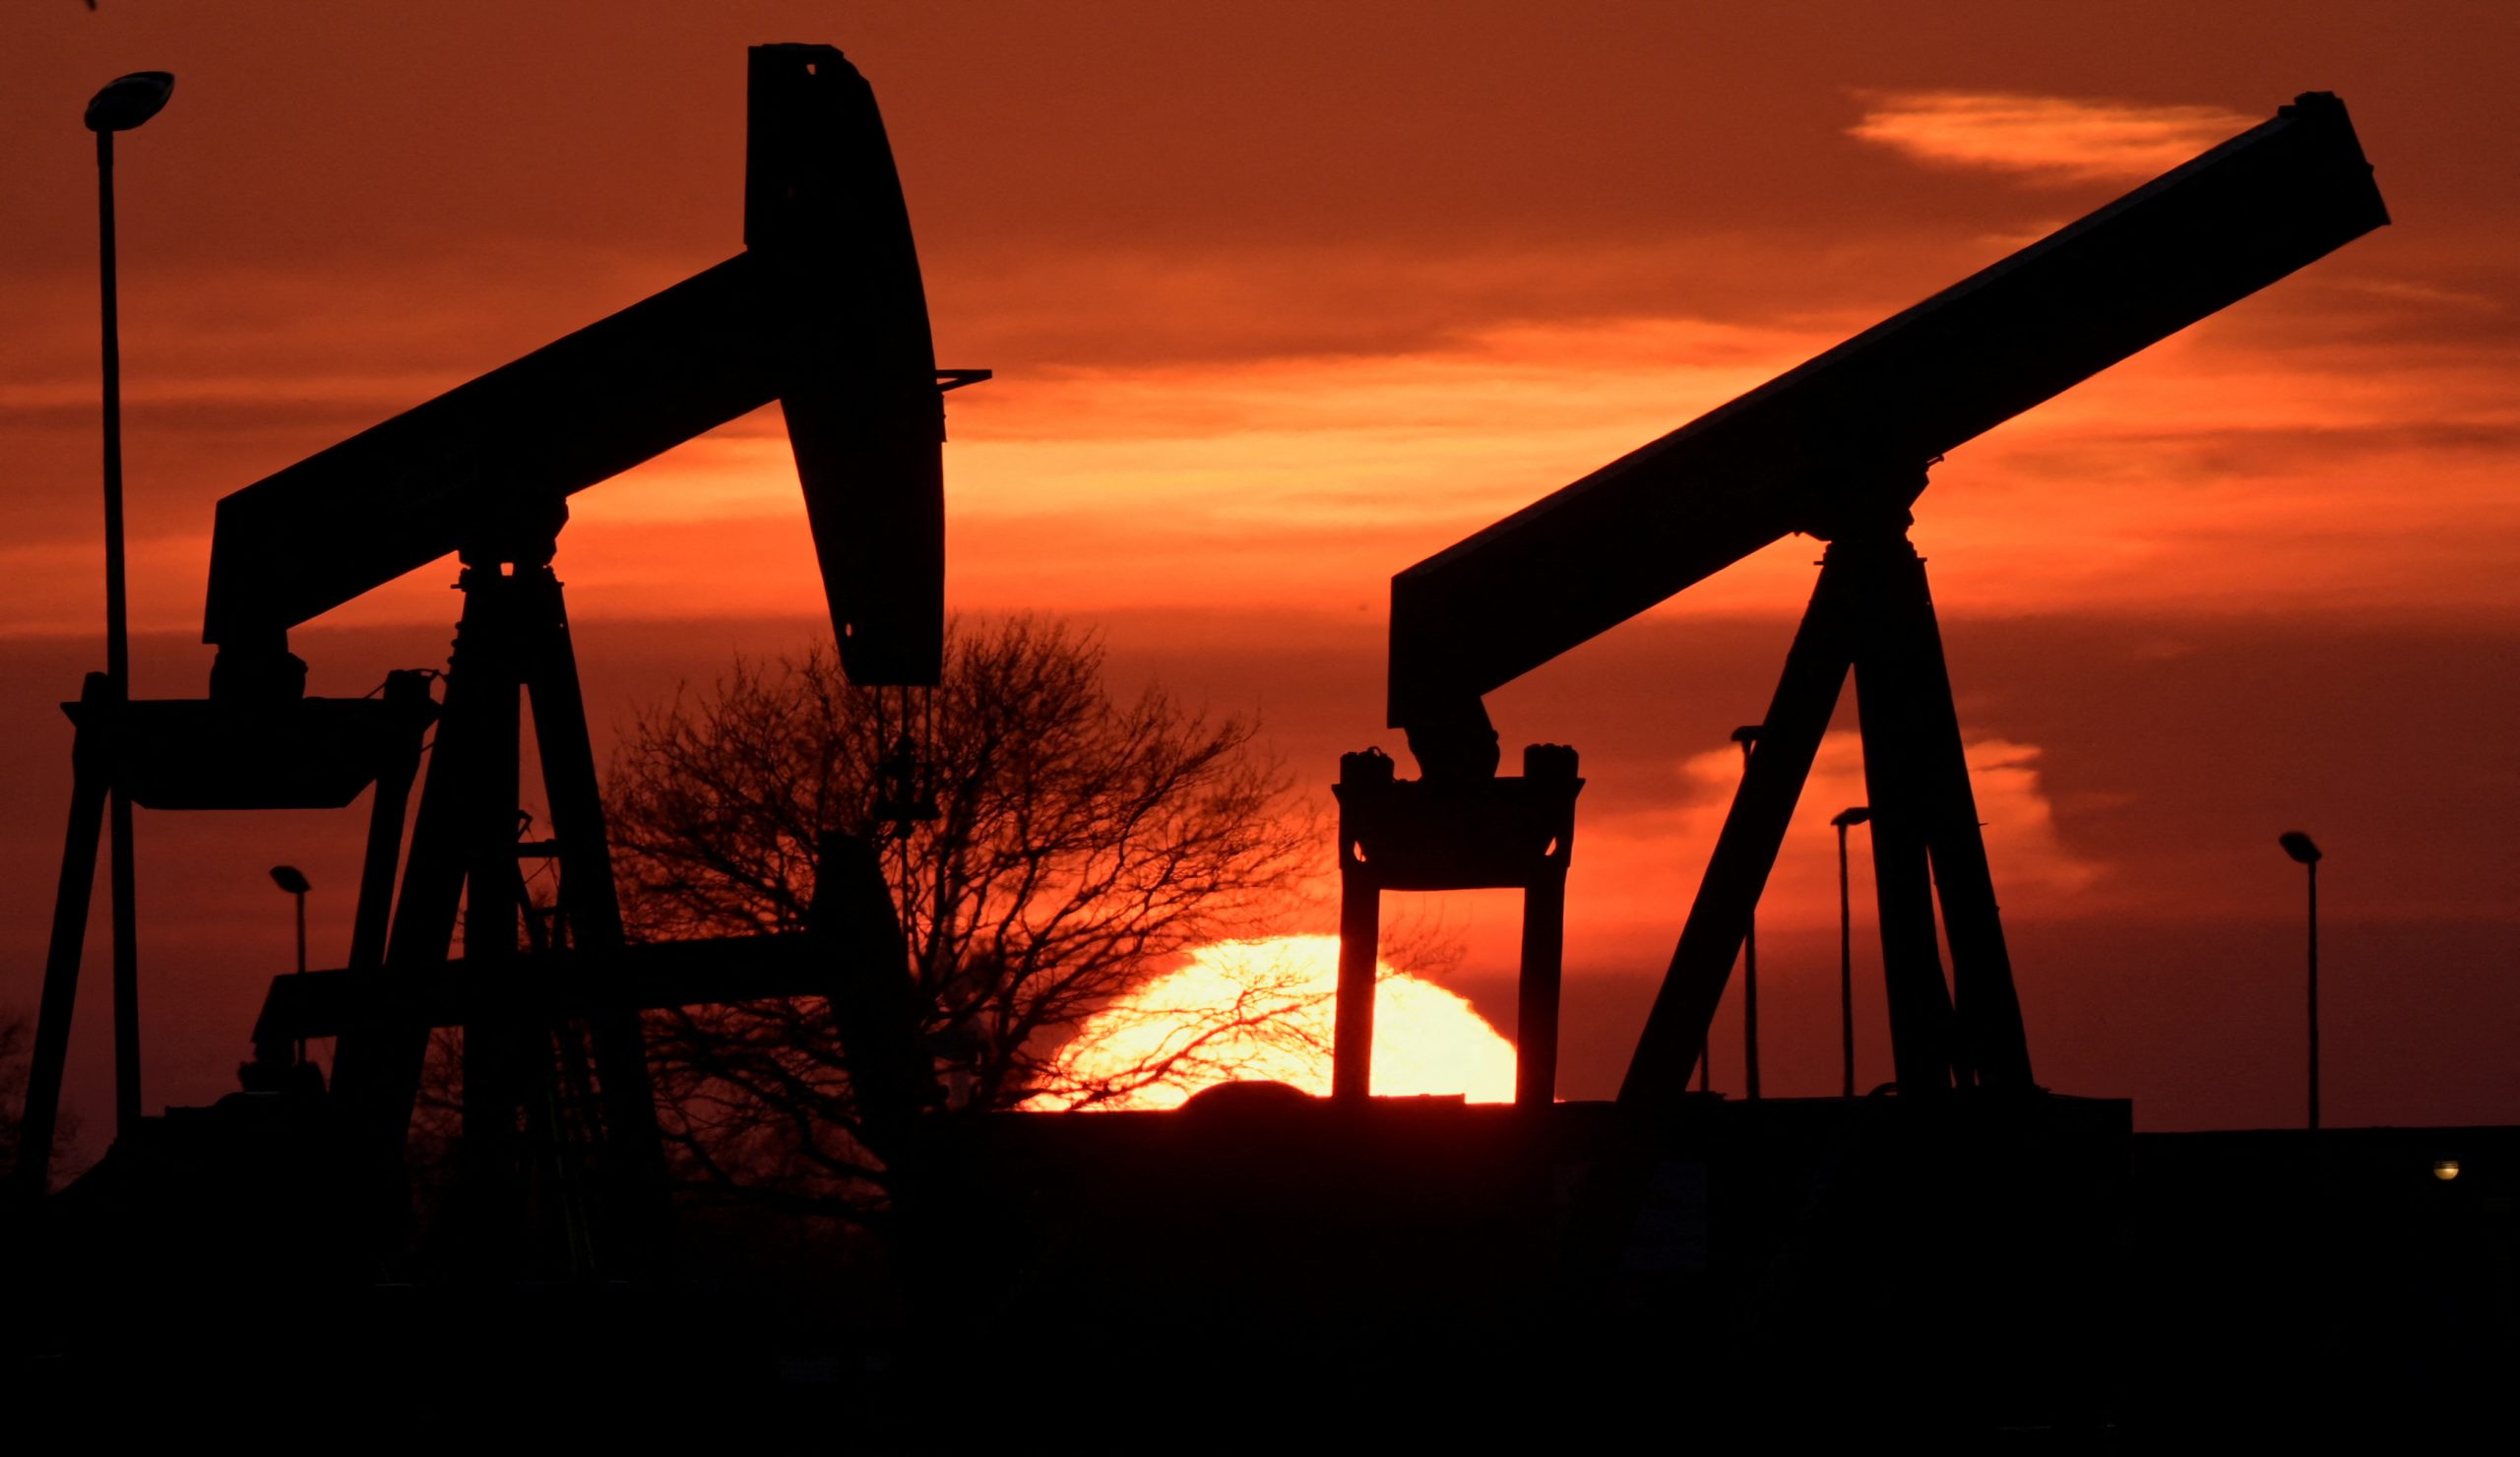 Πετρέλαιο: Πτώση 1% με τις αγορές να υποβαθμίζουν τον κίνδυνο ευρύτερης περιφερειακής ανάφλεξης